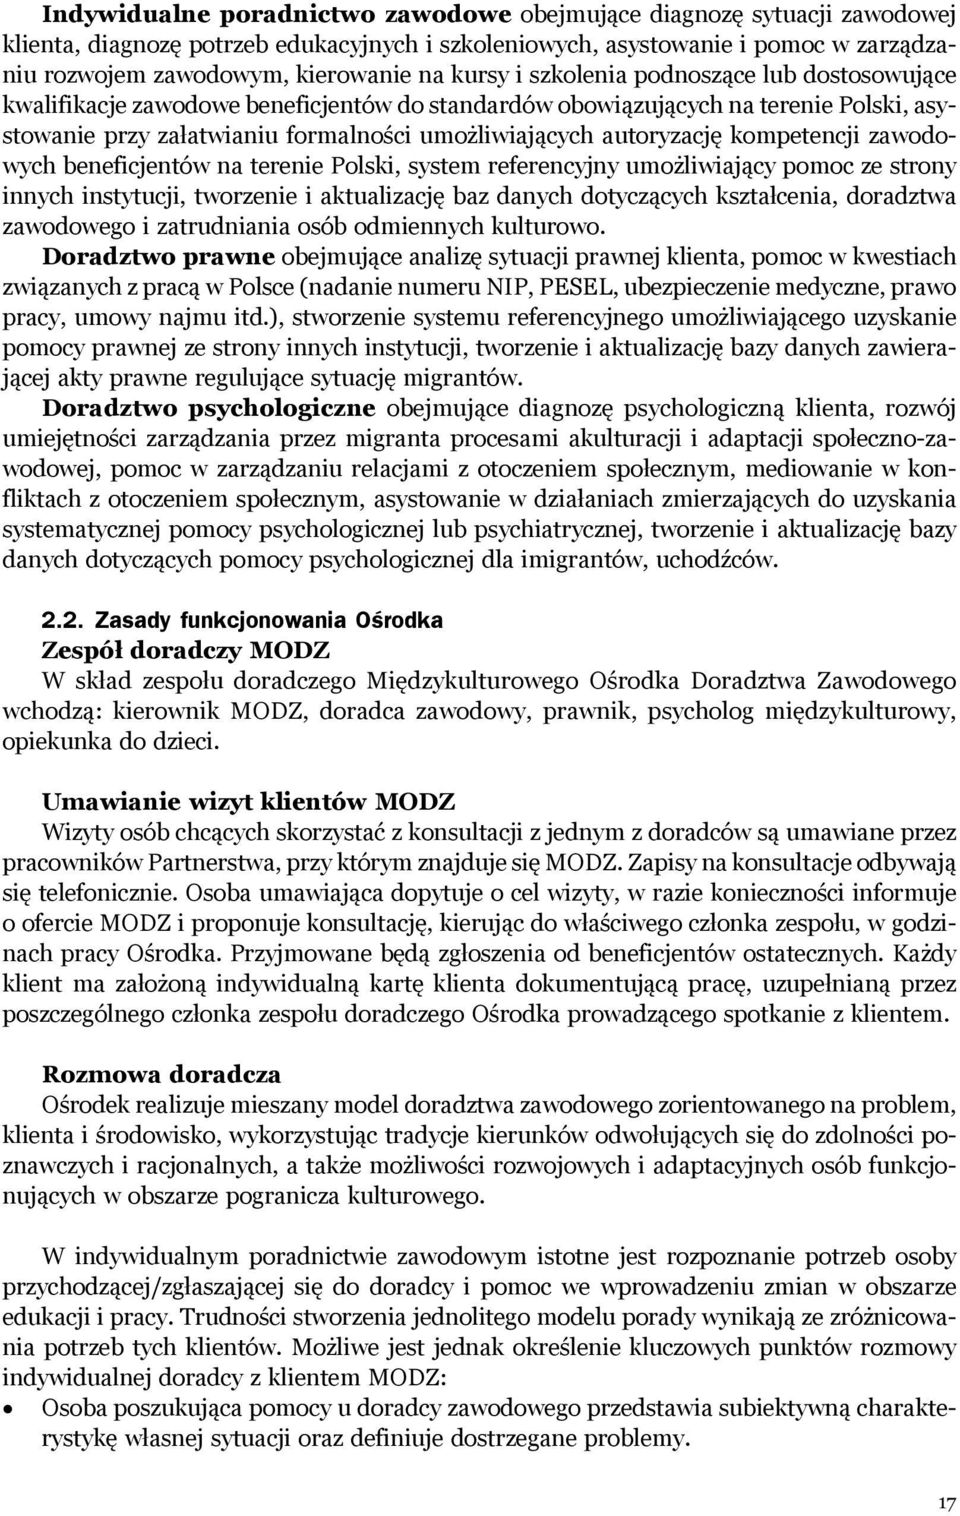 kompetencji zawodowych beneficjentów na terenie Polski, system referencyjny umożliwiający pomoc ze strony innych instytucji, tworzenie i aktualizację baz danych dotyczących kształcenia, doradztwa